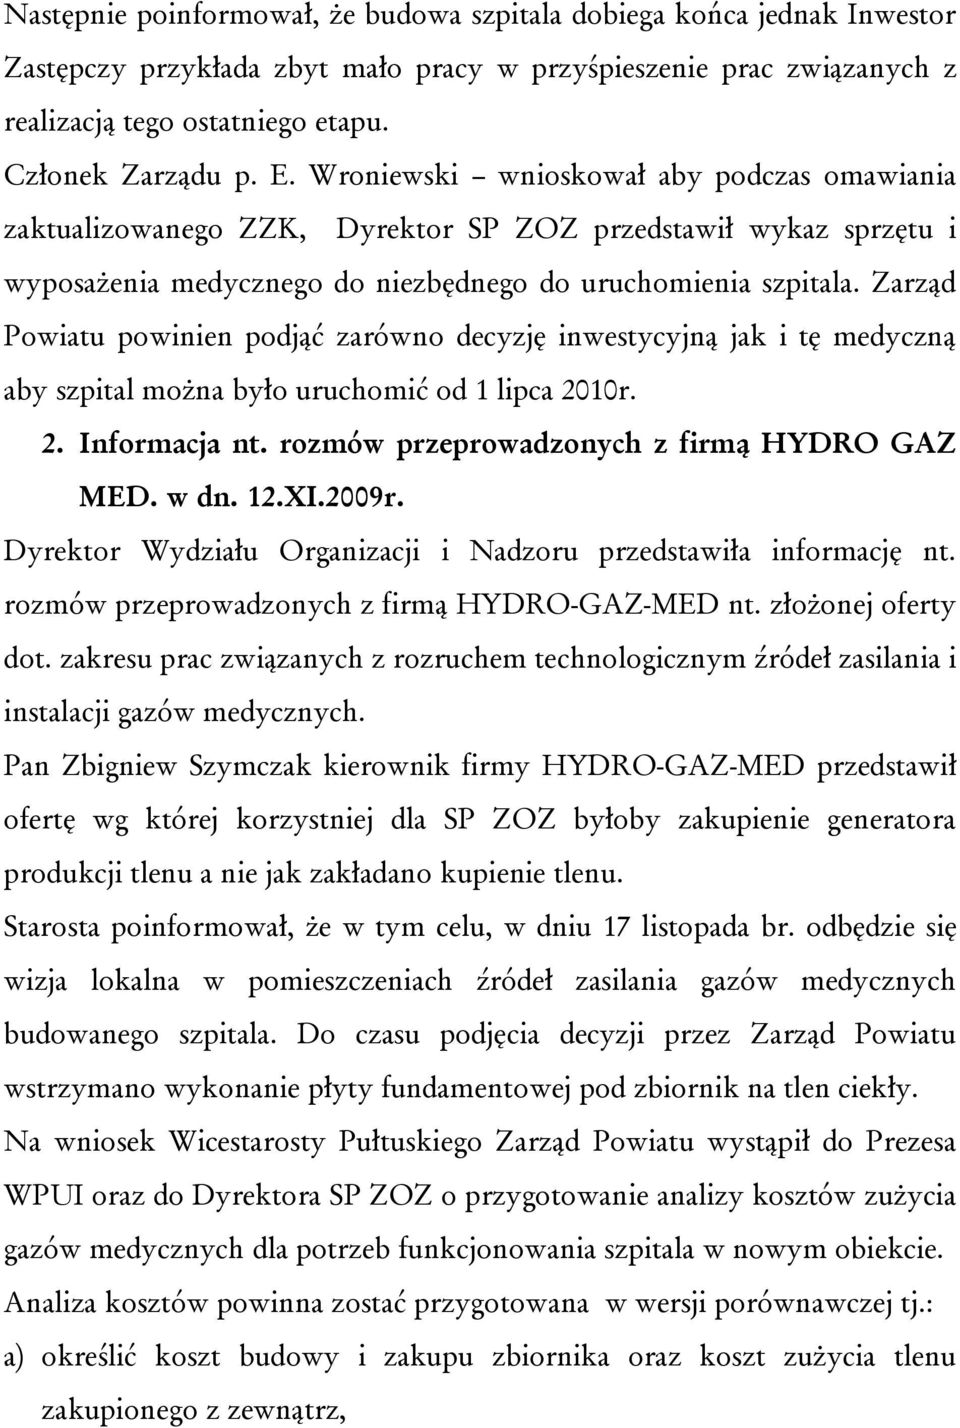 Zarząd Powiatu powinien podjąć zarówno decyzję inwestycyjną jak i tę medyczną aby szpital można było uruchomić od 1 lipca 2010r. 2. Informacja nt. rozmów przeprowadzonych z firmą HYDRO GAZ MED. w dn.